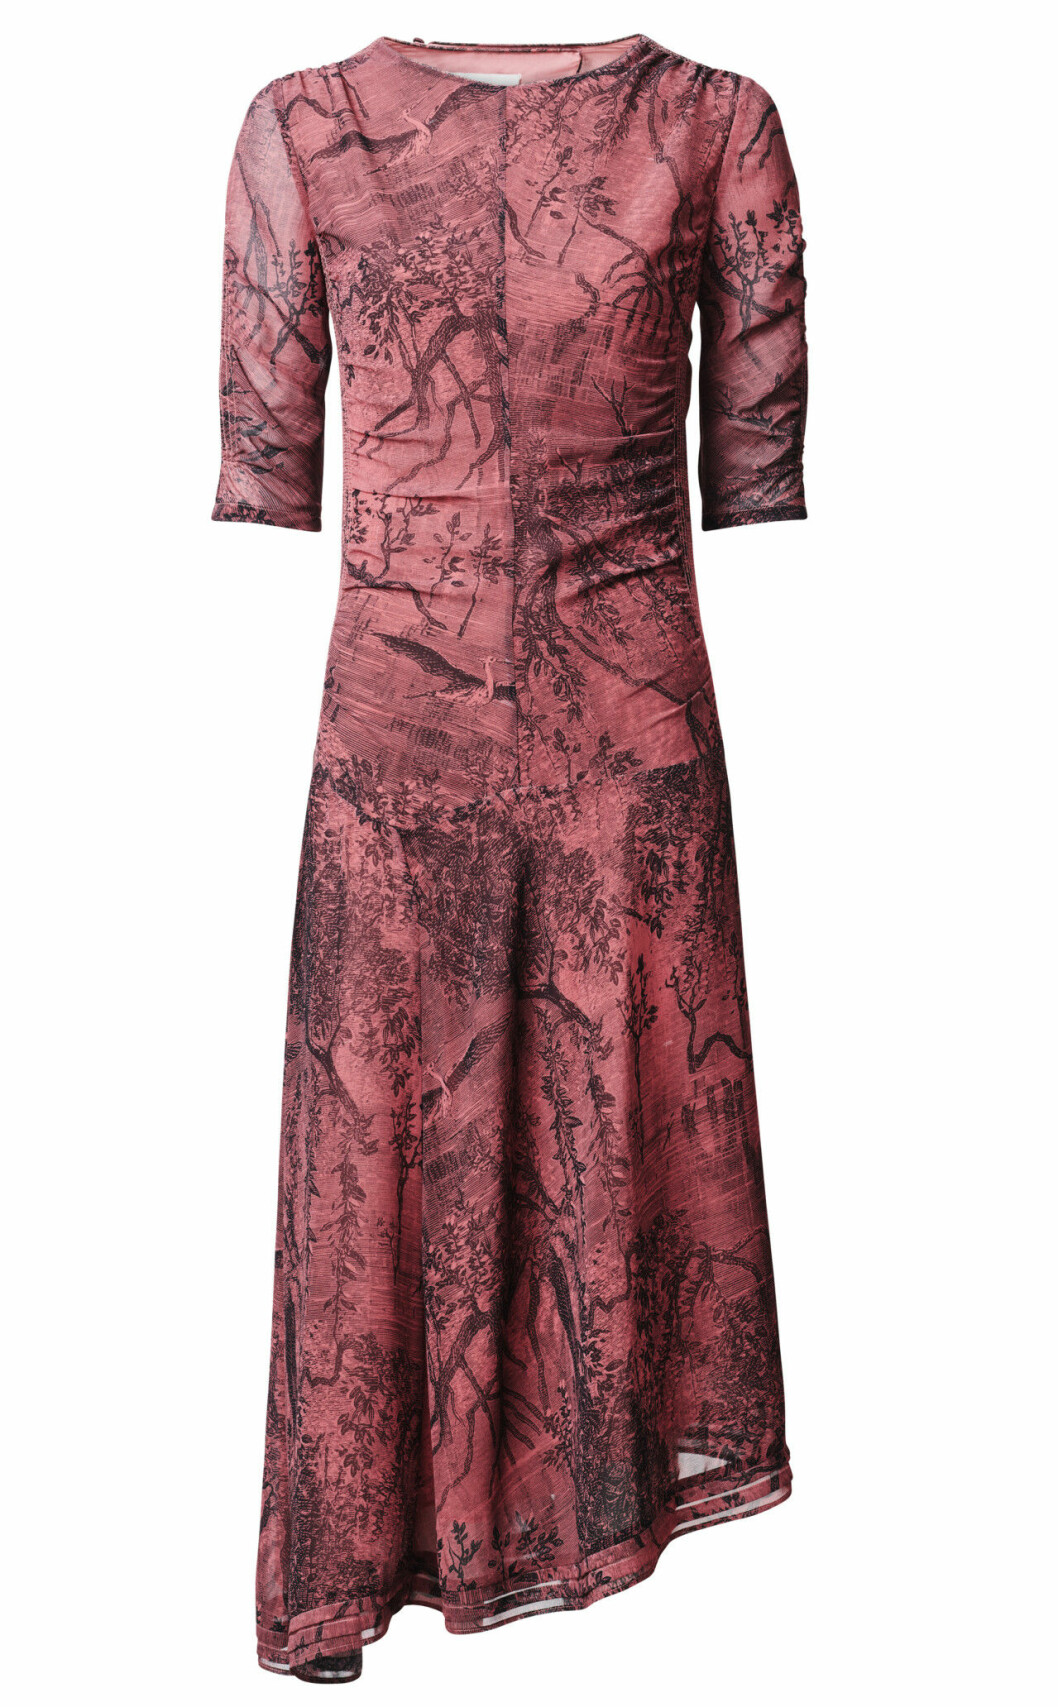 H&M Conscious Exclusive 2019 röd klänning med trekvartsärm 